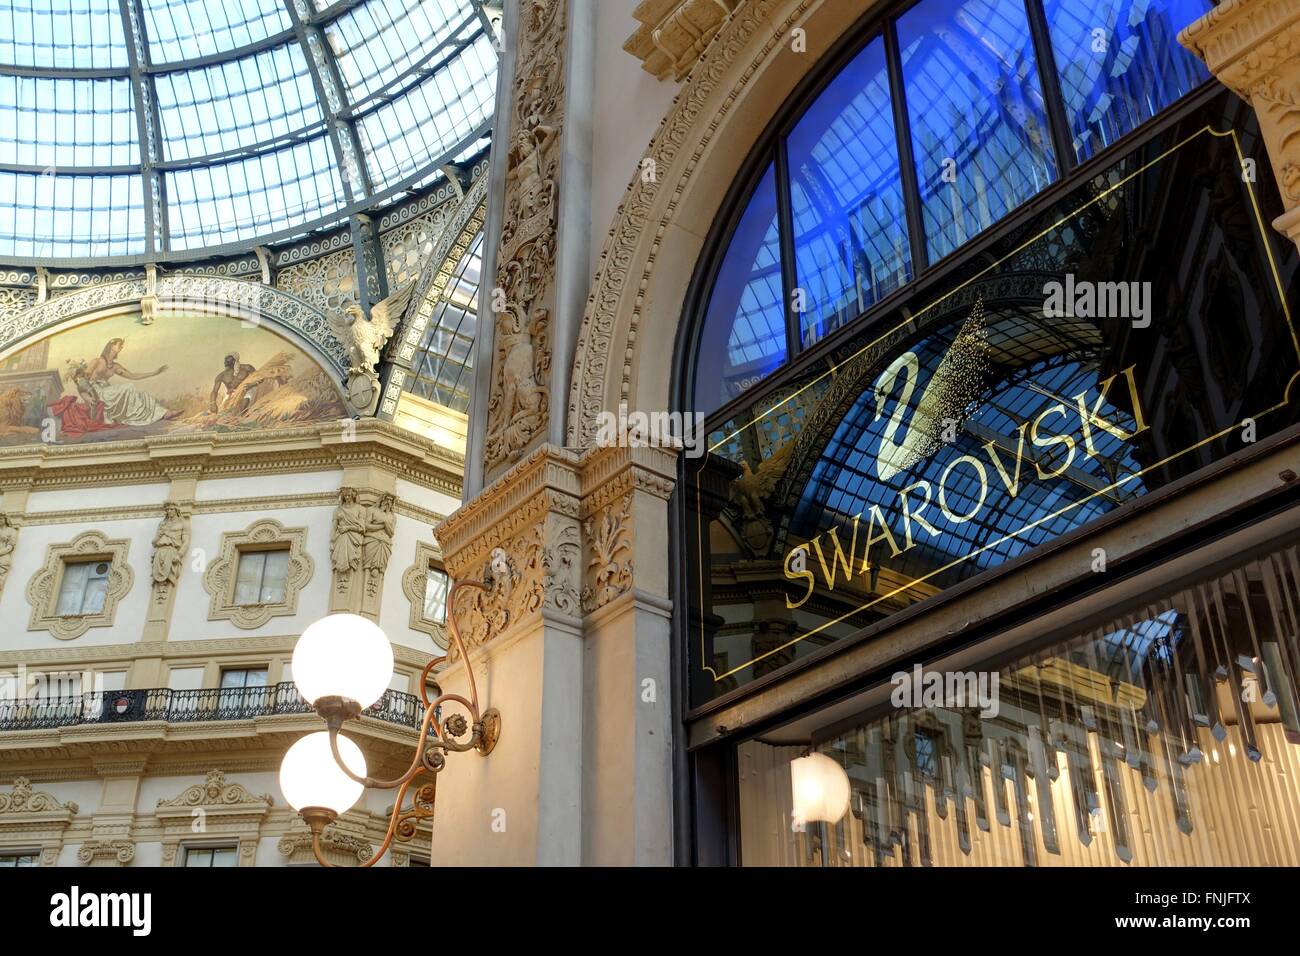 Italia: Swarovski boutique presso la Galleria Vittorio Emanuele II a Milano.  Foto da 10. Marzo 2016 Foto stock - Alamy